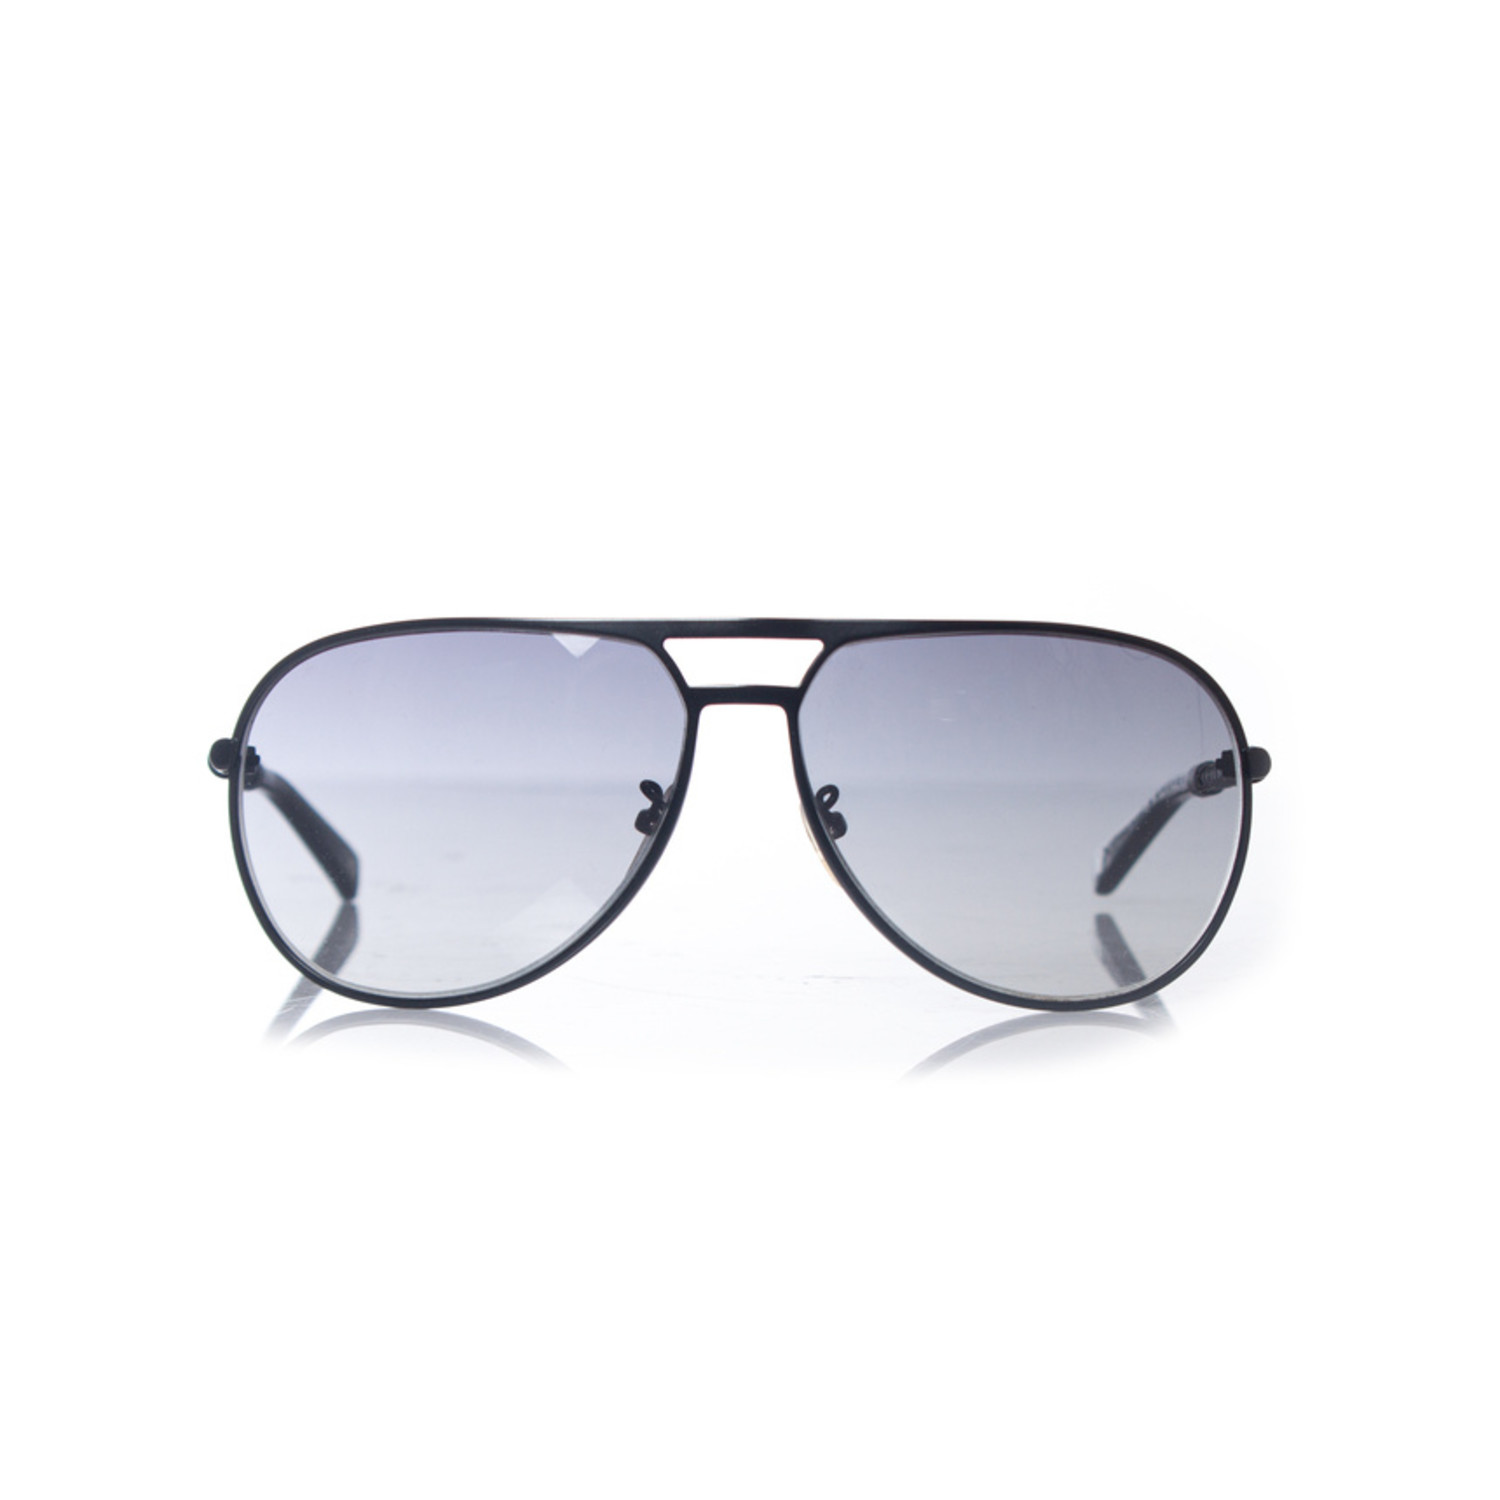 Bottega Veneta, Aviator sunglasses - Unique Designer Pieces